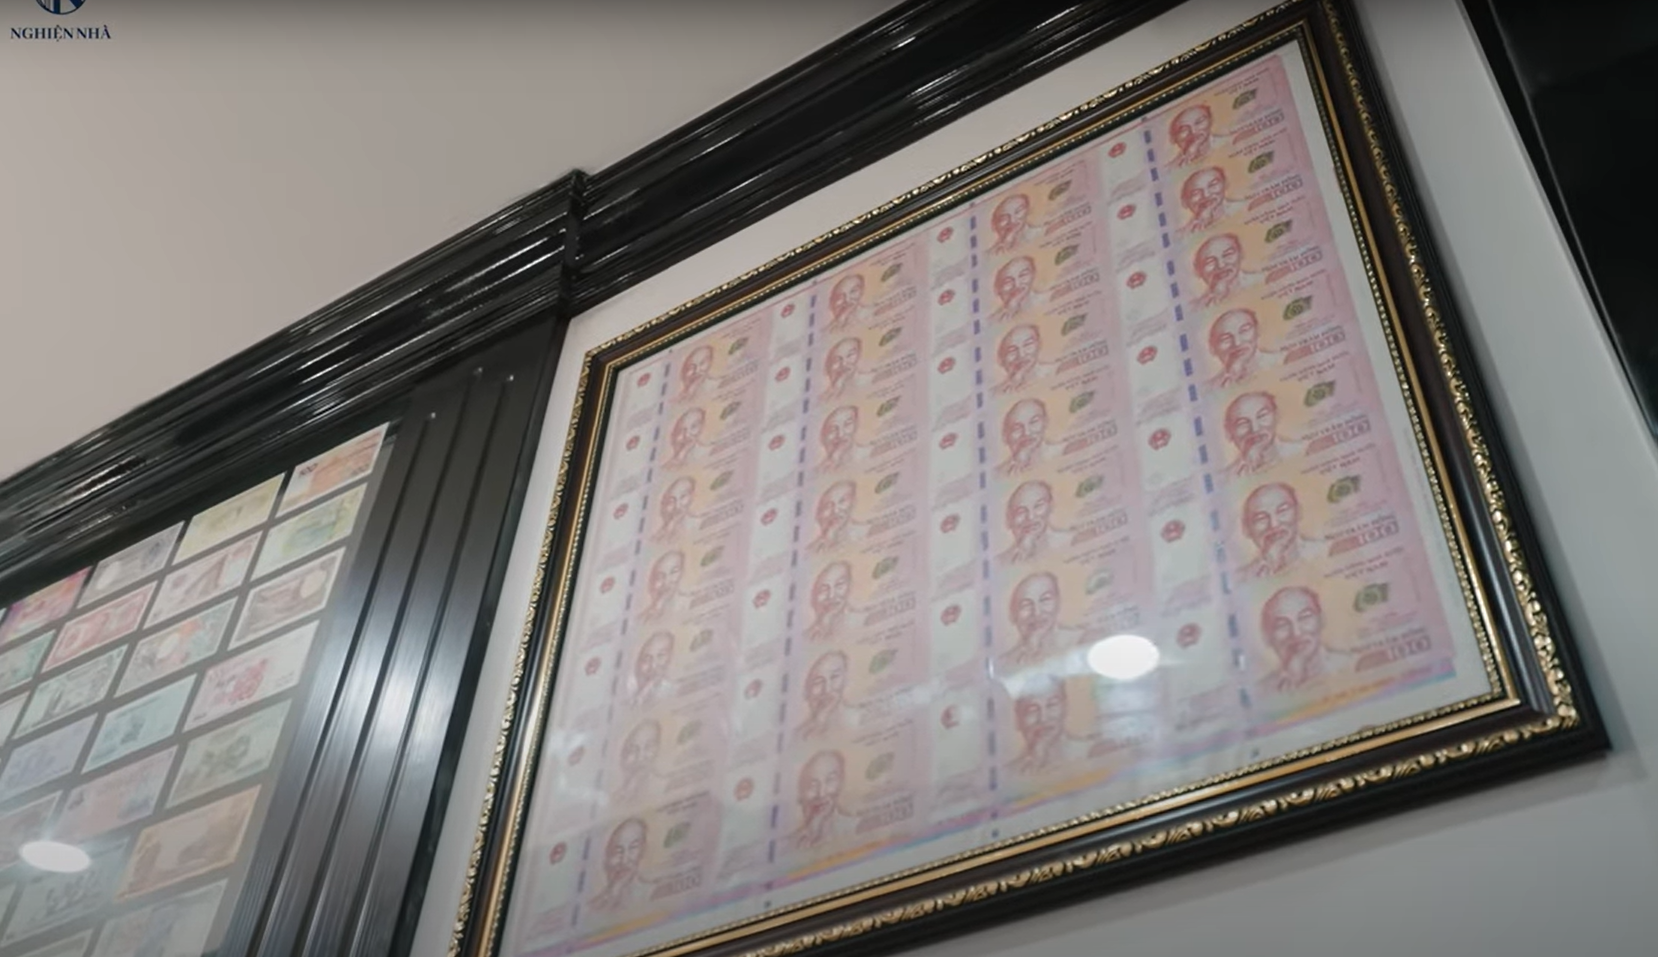 Căn biệt thự kim tiền của vua tiền tệ Hùng Bá: Tiền ‘dát’ từ ngoài cổng, choáng ngợp nhất là BST tiền cổ có loạt seri quý hiếm trị giá hơn 10 tỷ đồng - Ảnh 15.